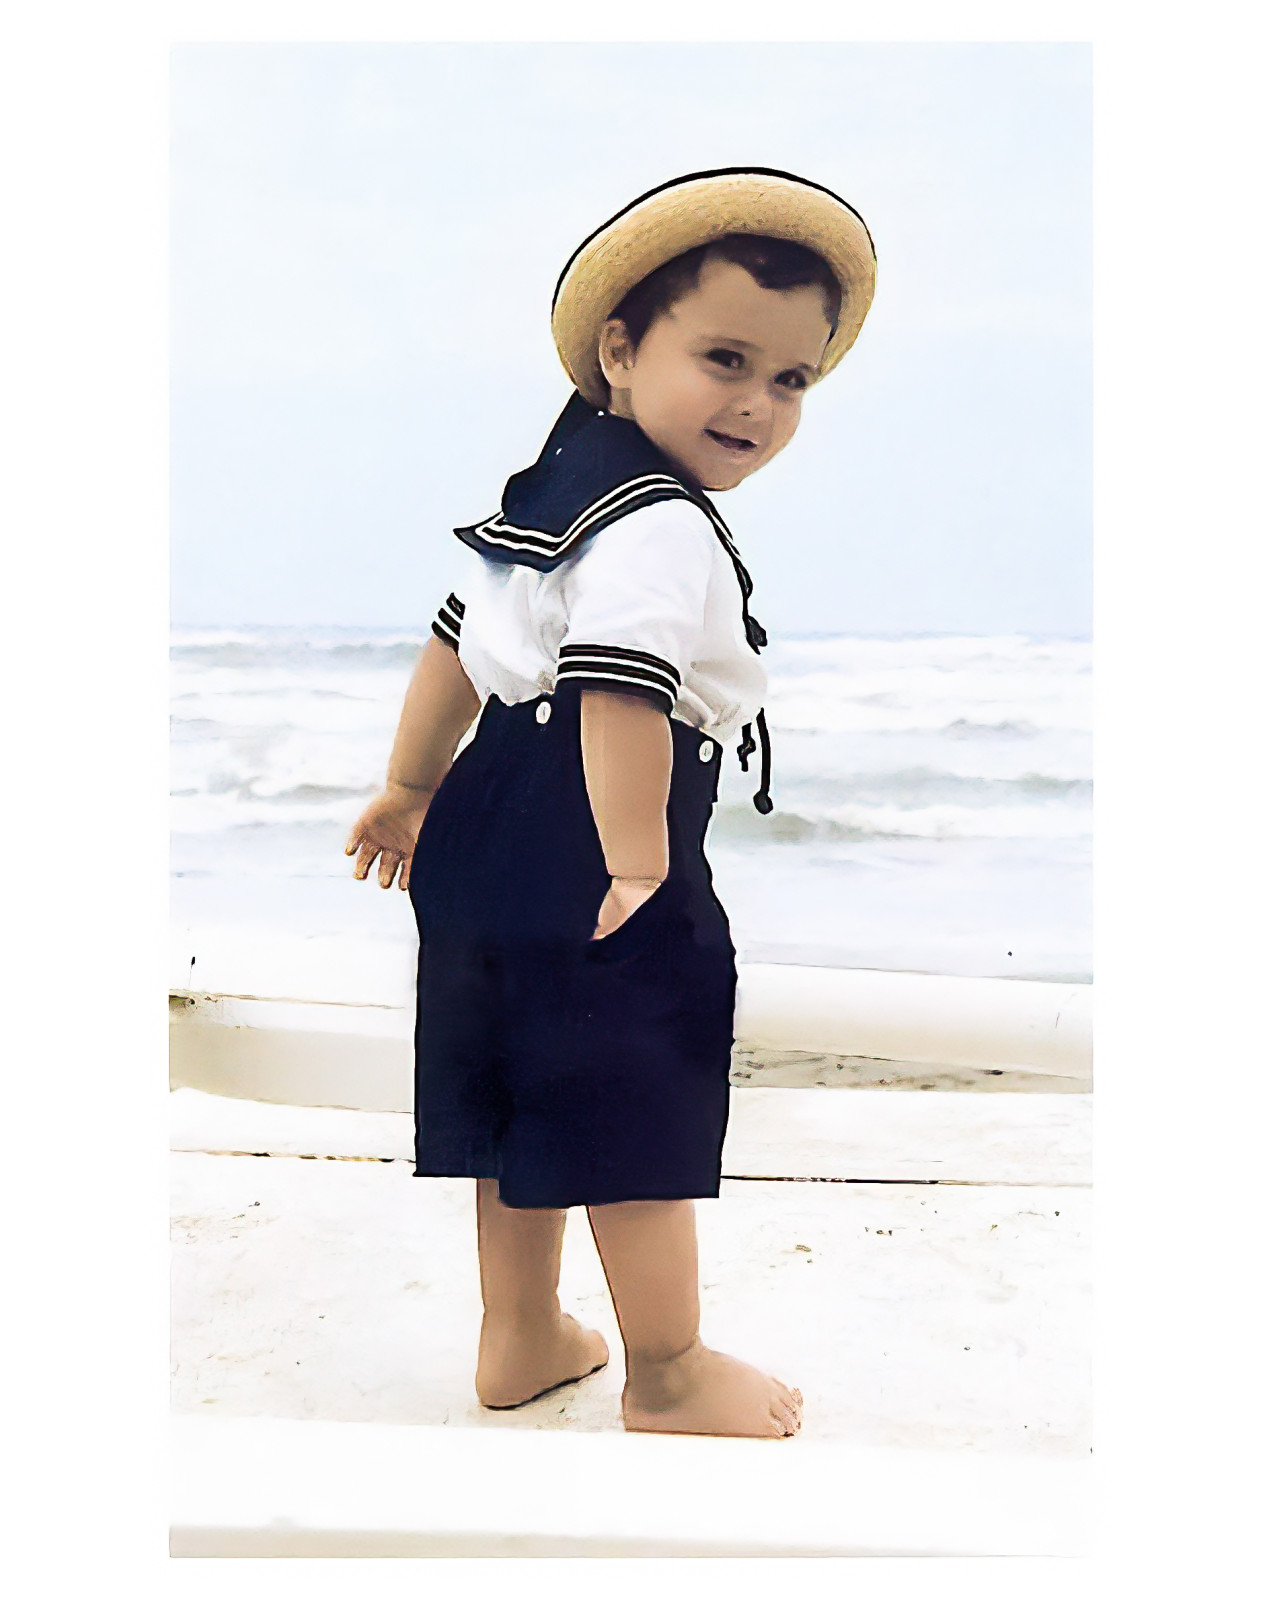 Giacomo sailor boy outfit